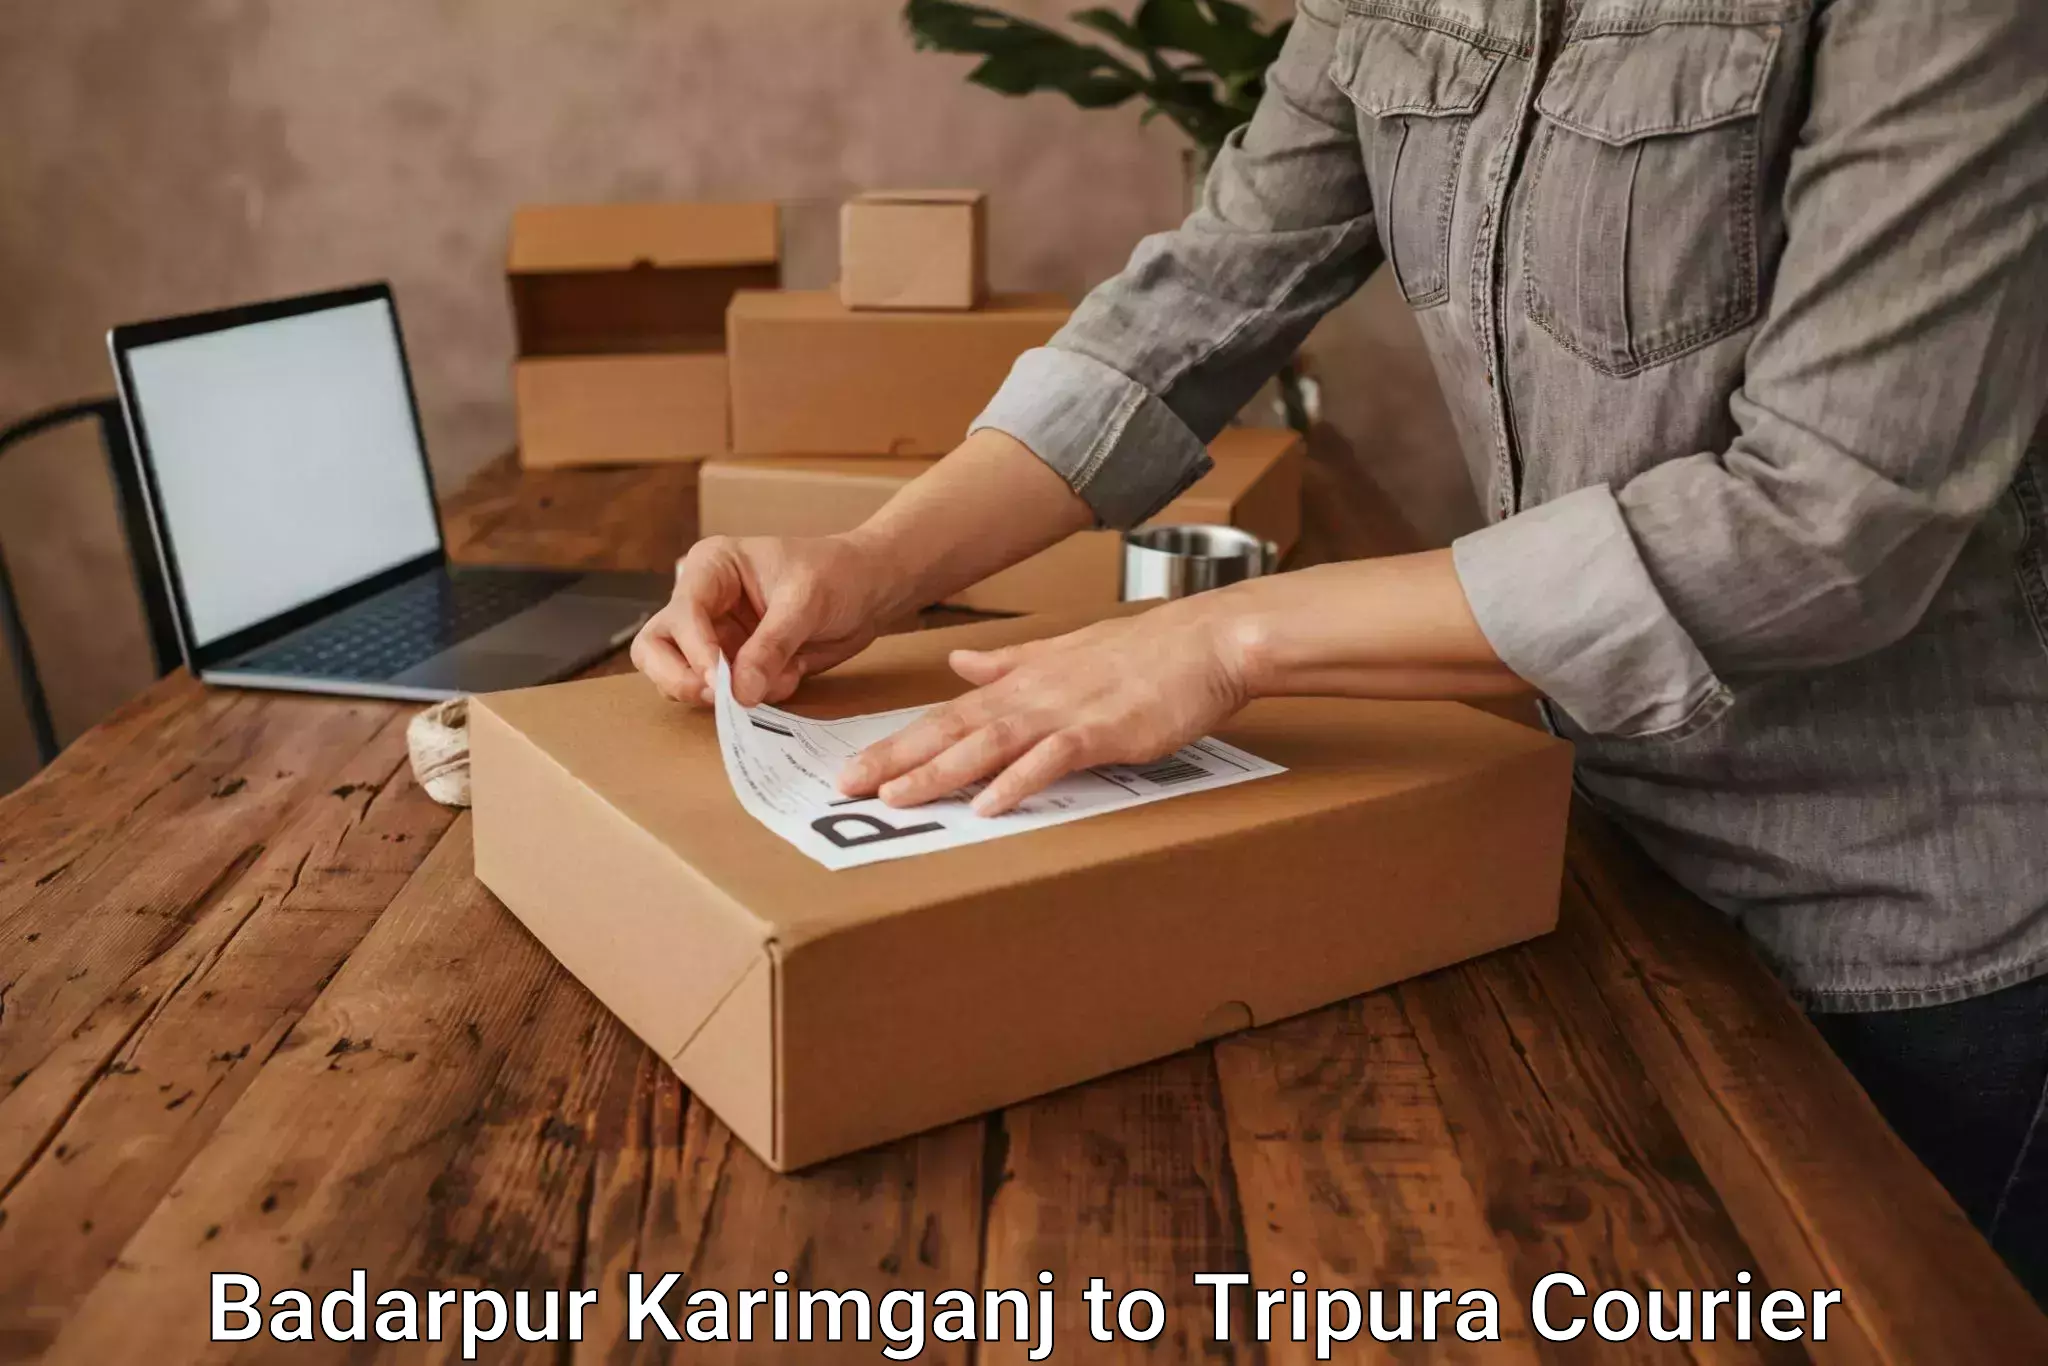 User-friendly delivery service Badarpur Karimganj to Manughat